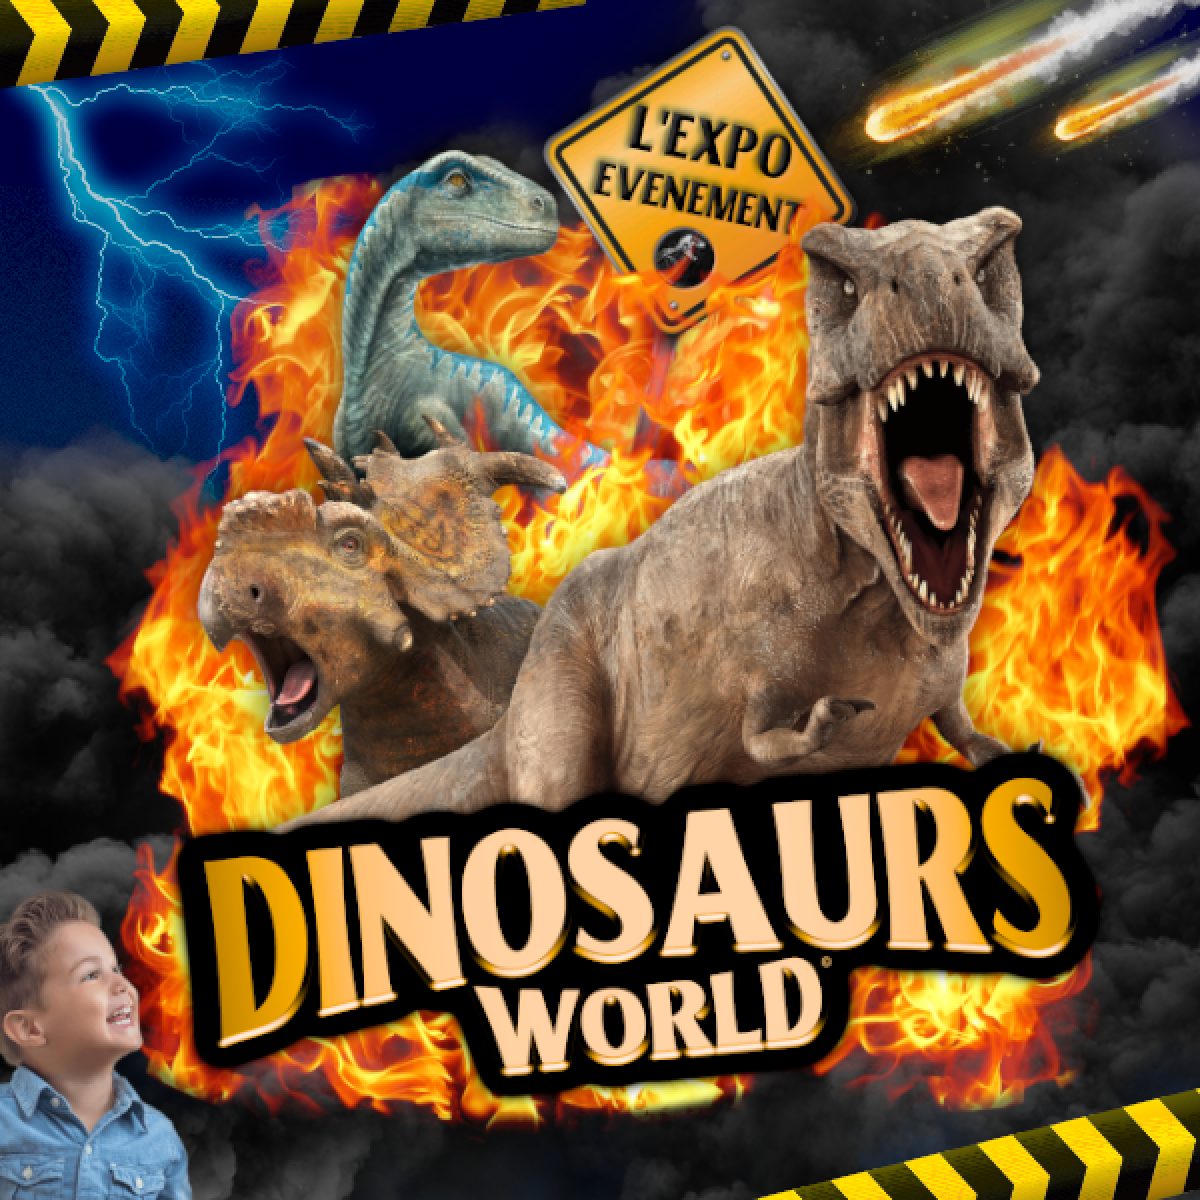 Exposition de dinosaures • Dinosaurs World à Cannes